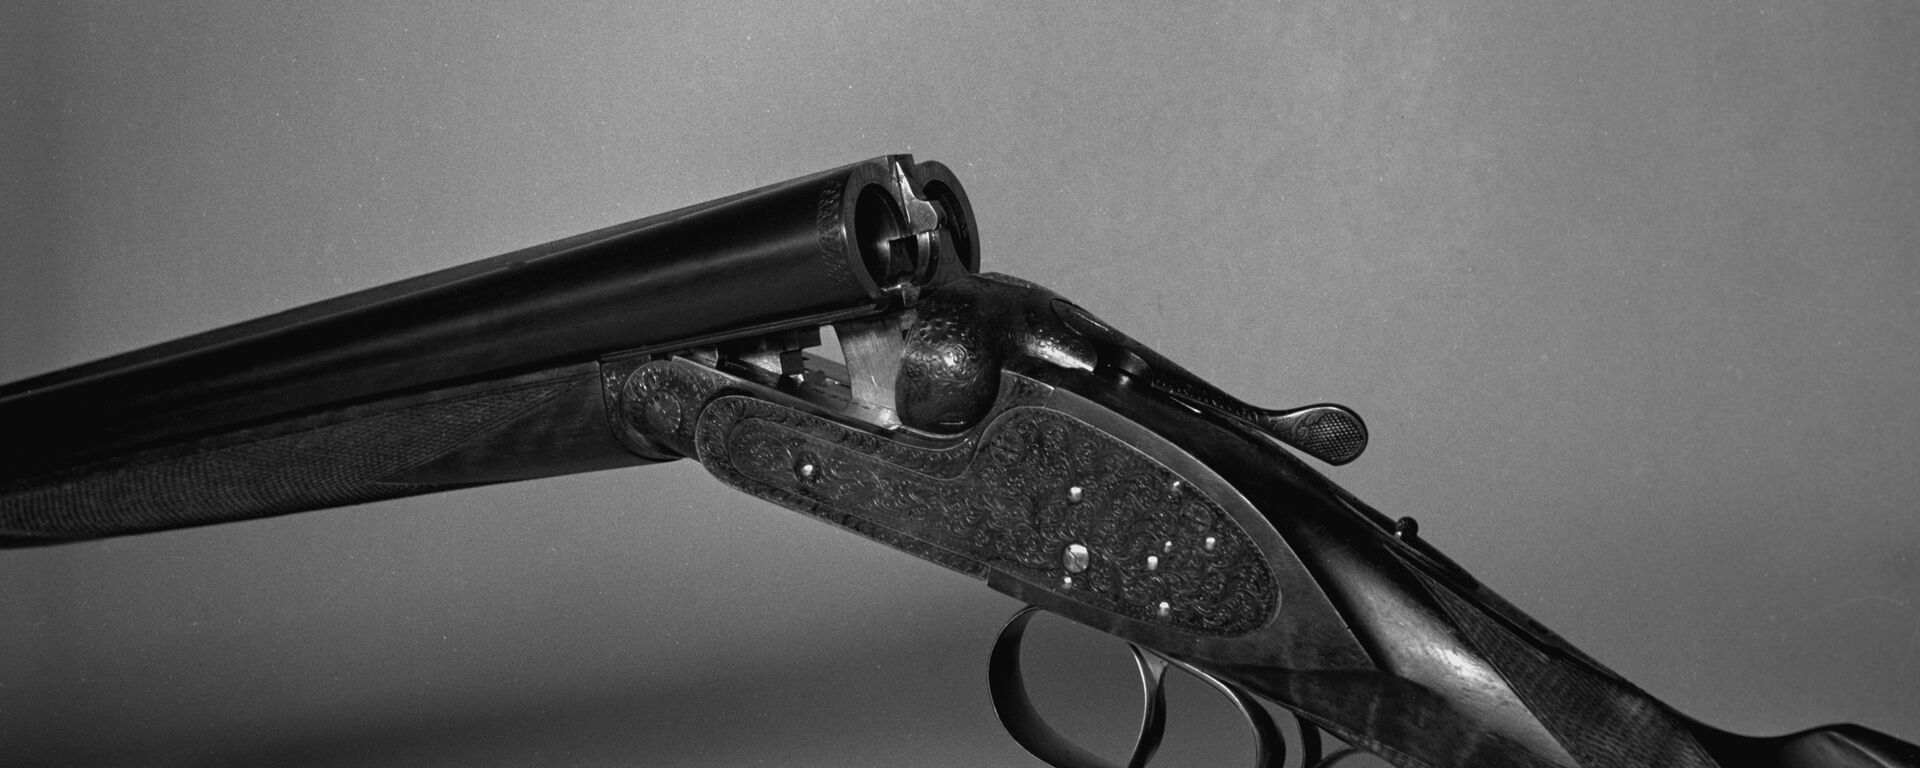 Охотничье двуствольное ружье с вертикально спаренными стволами МЦ-6 - Sputnik Узбекистан, 1920, 13.01.2019